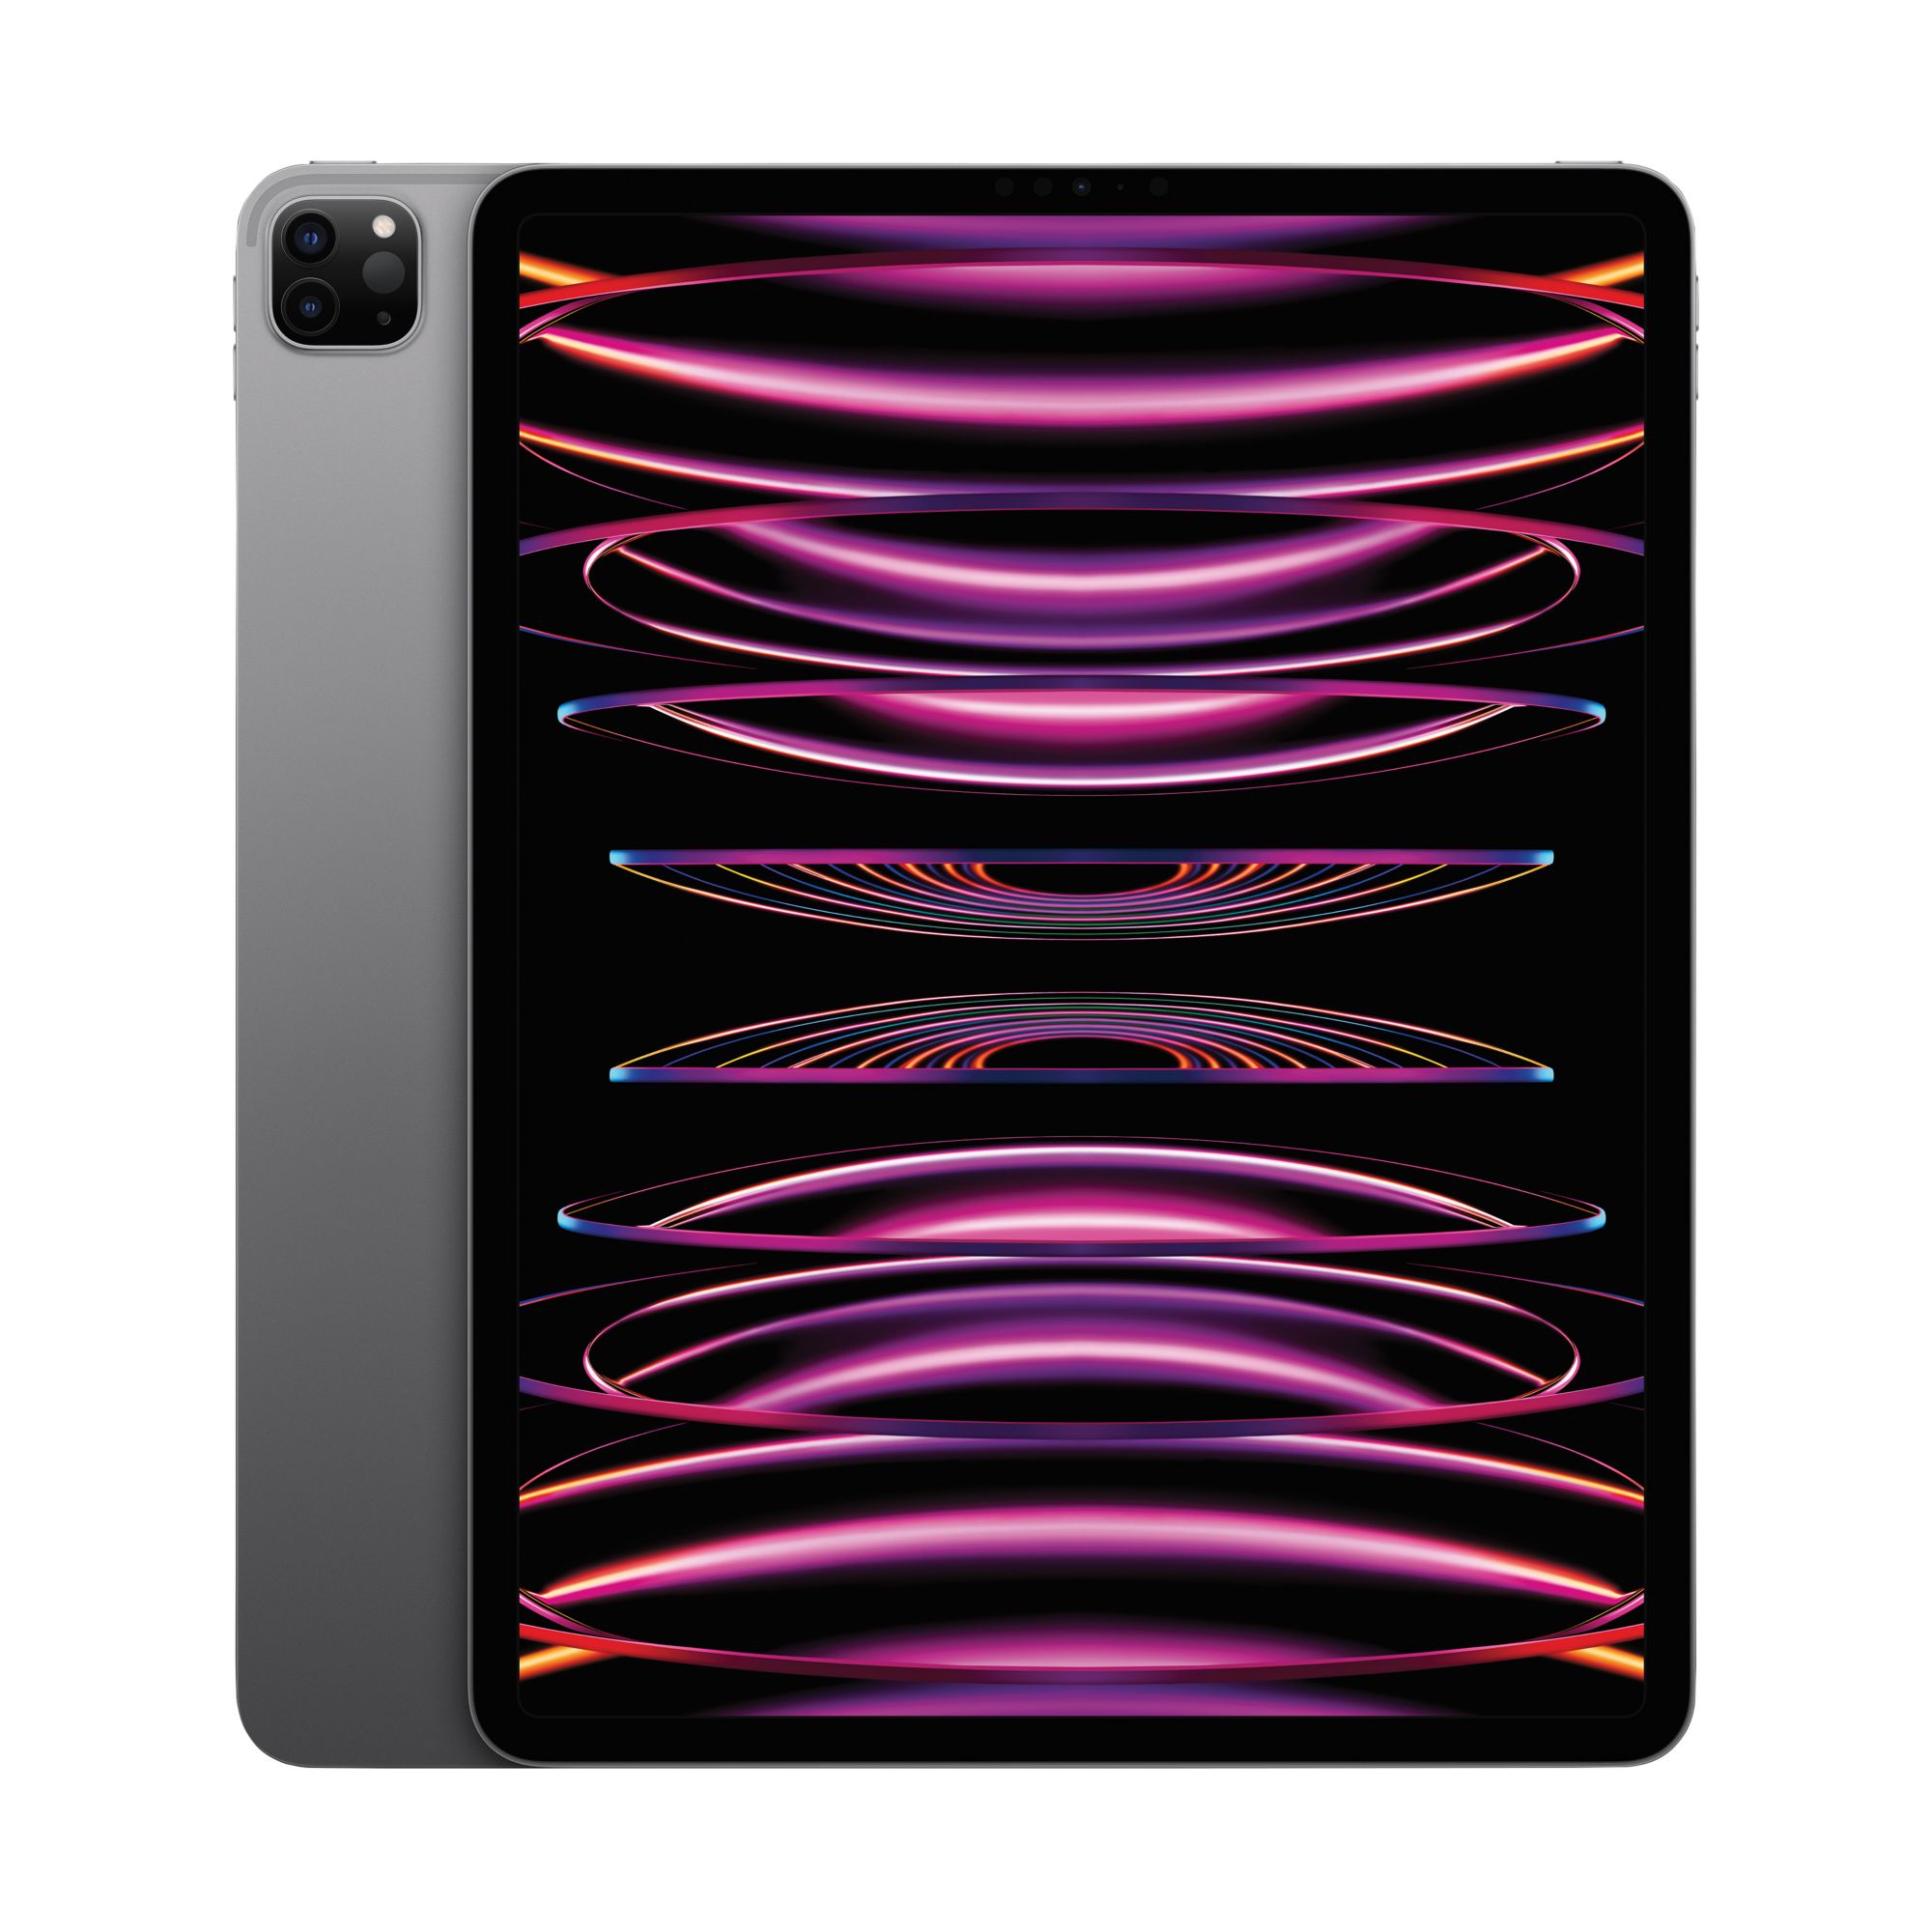  Apple iPad Pro 12.9in Tablet (256GB Wi-FI, Silver)(Renewed) :  Electronics